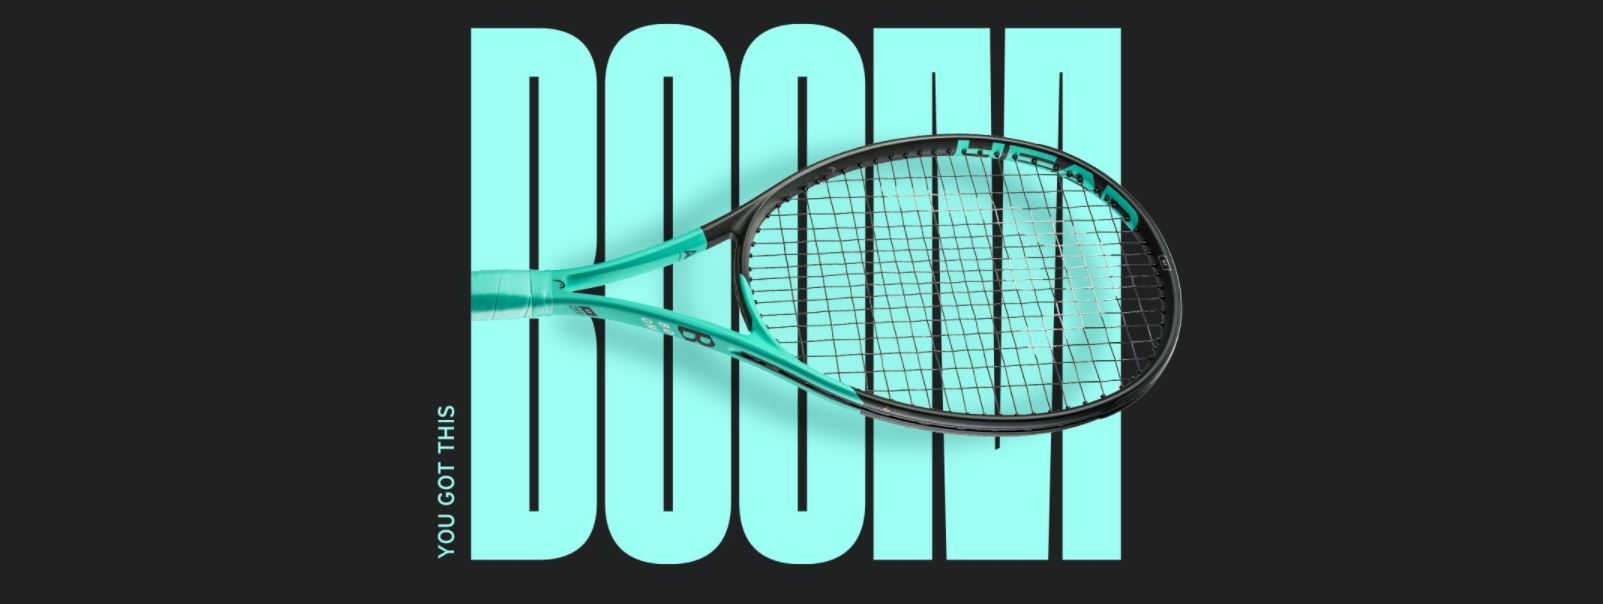 【曼森體育】HEAD BOOM MP 網球拍 295g 全新款 2022款 力量與控制